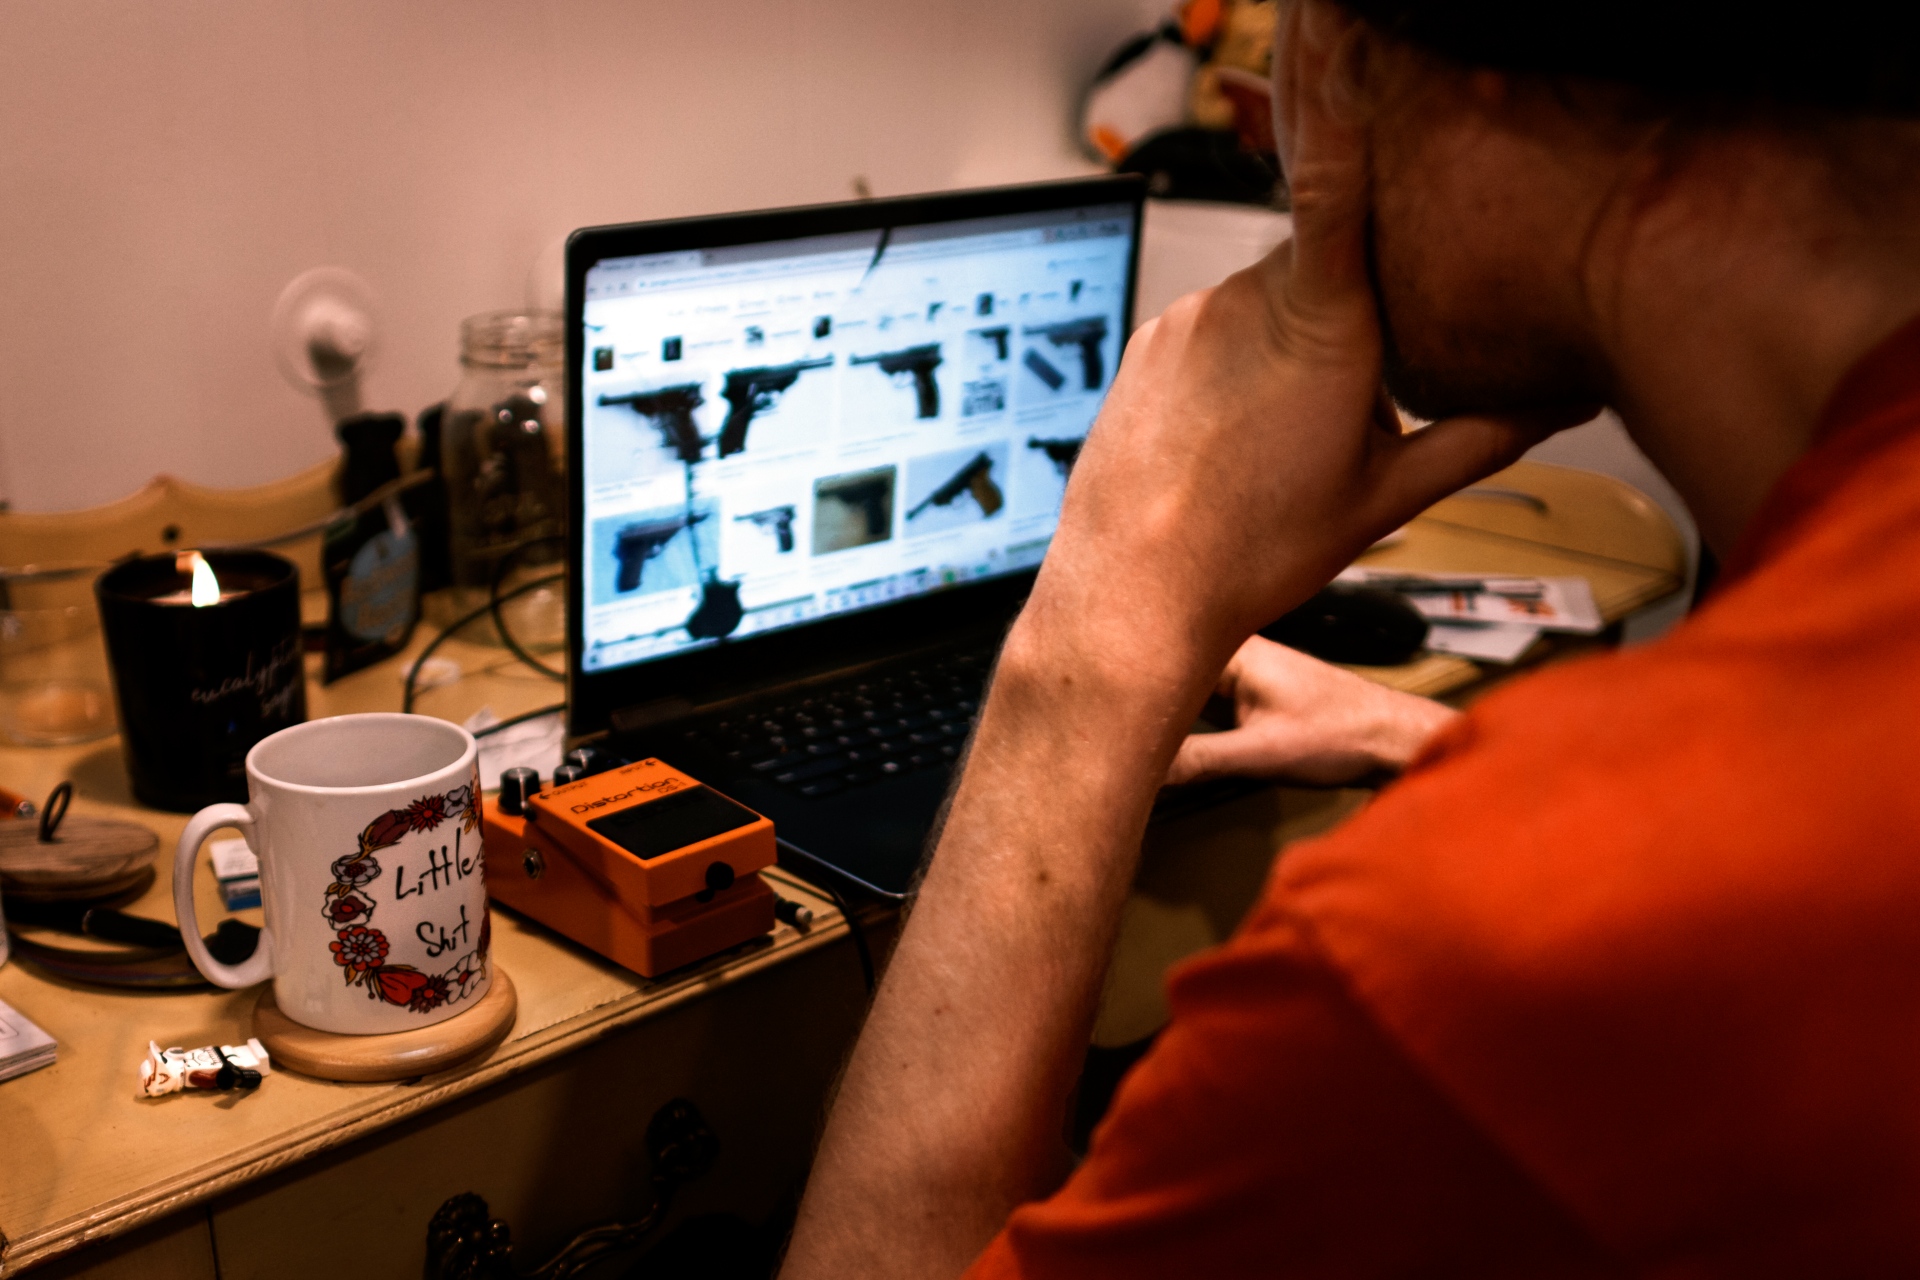 Mike mirando una computadora portátil con fotos de pistolas en la pantalla.